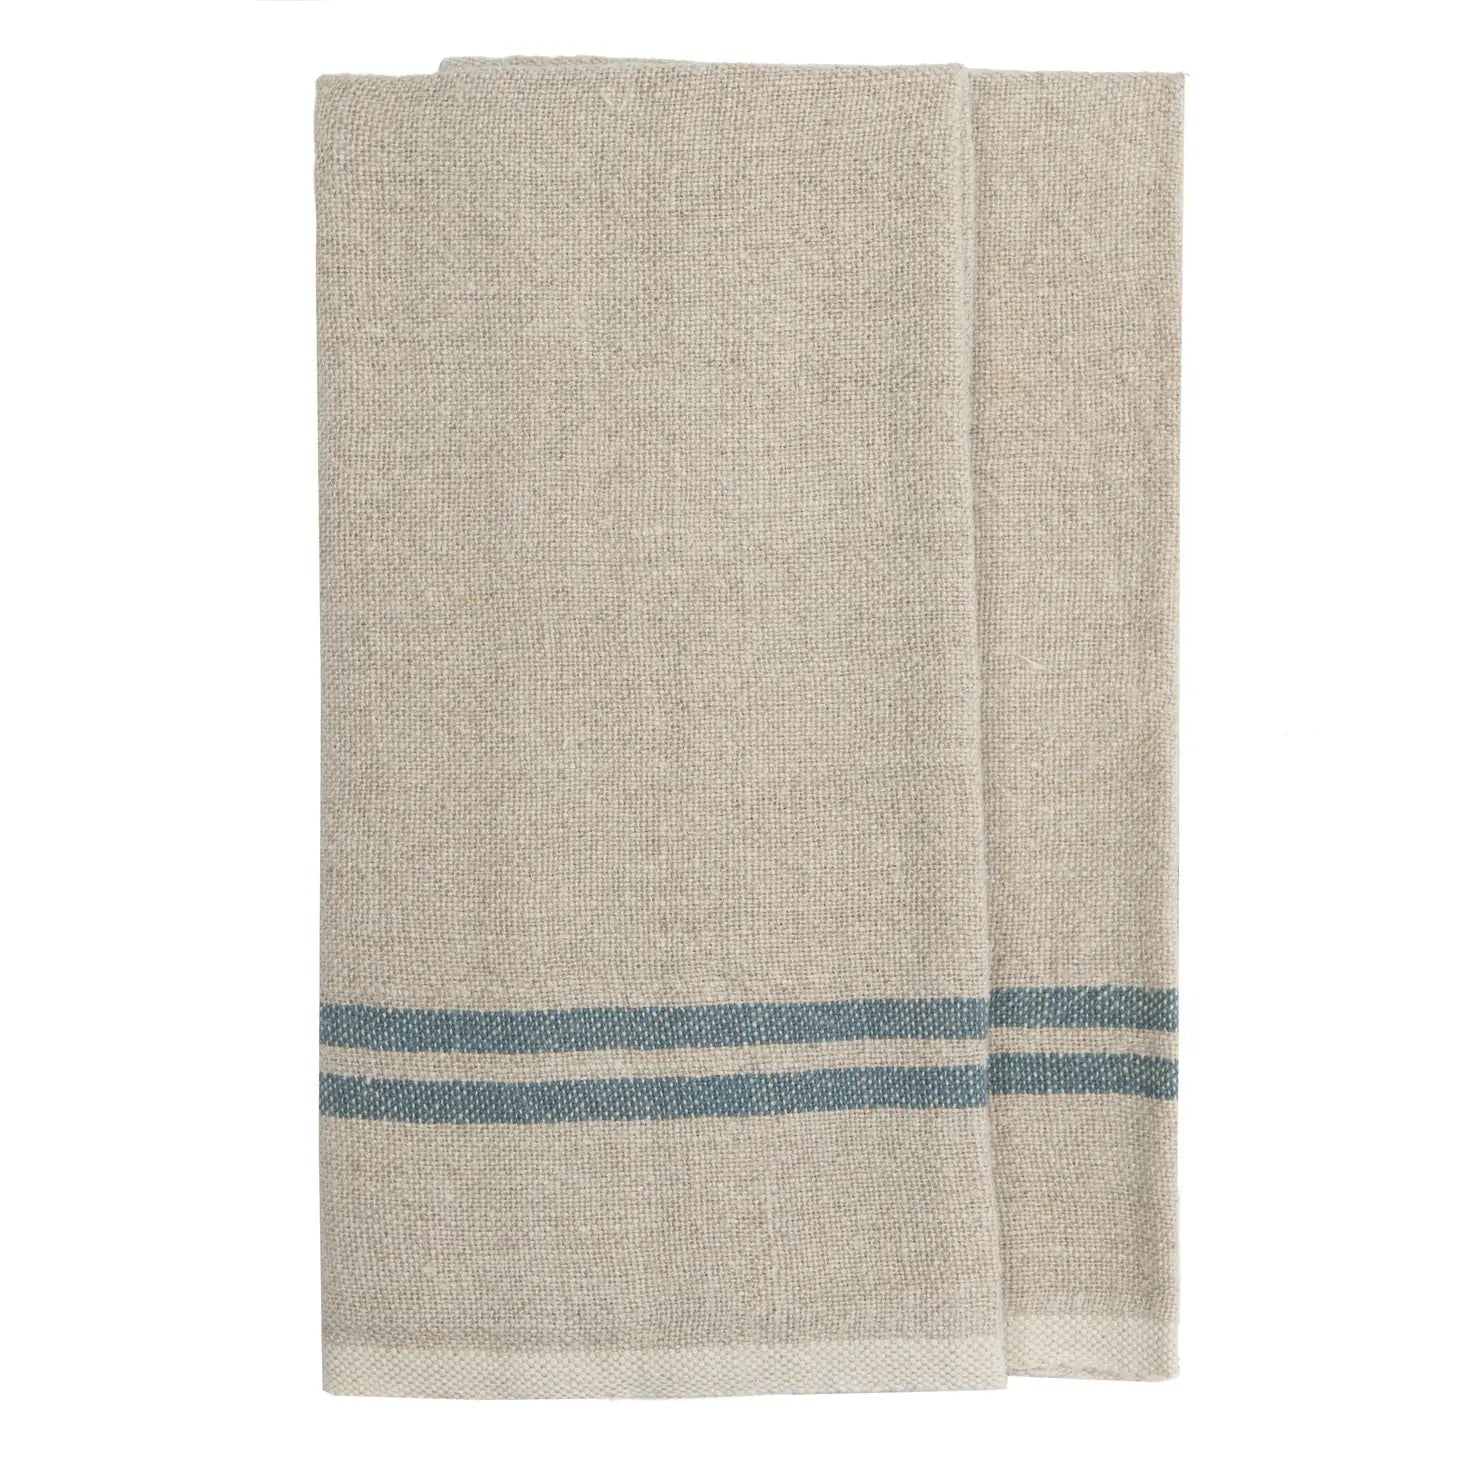 https://cdn.shopify.com/s/files/1/0246/6303/1870/products/vintage-linen-blue-natural-towel-523567.webp?v=1702560409